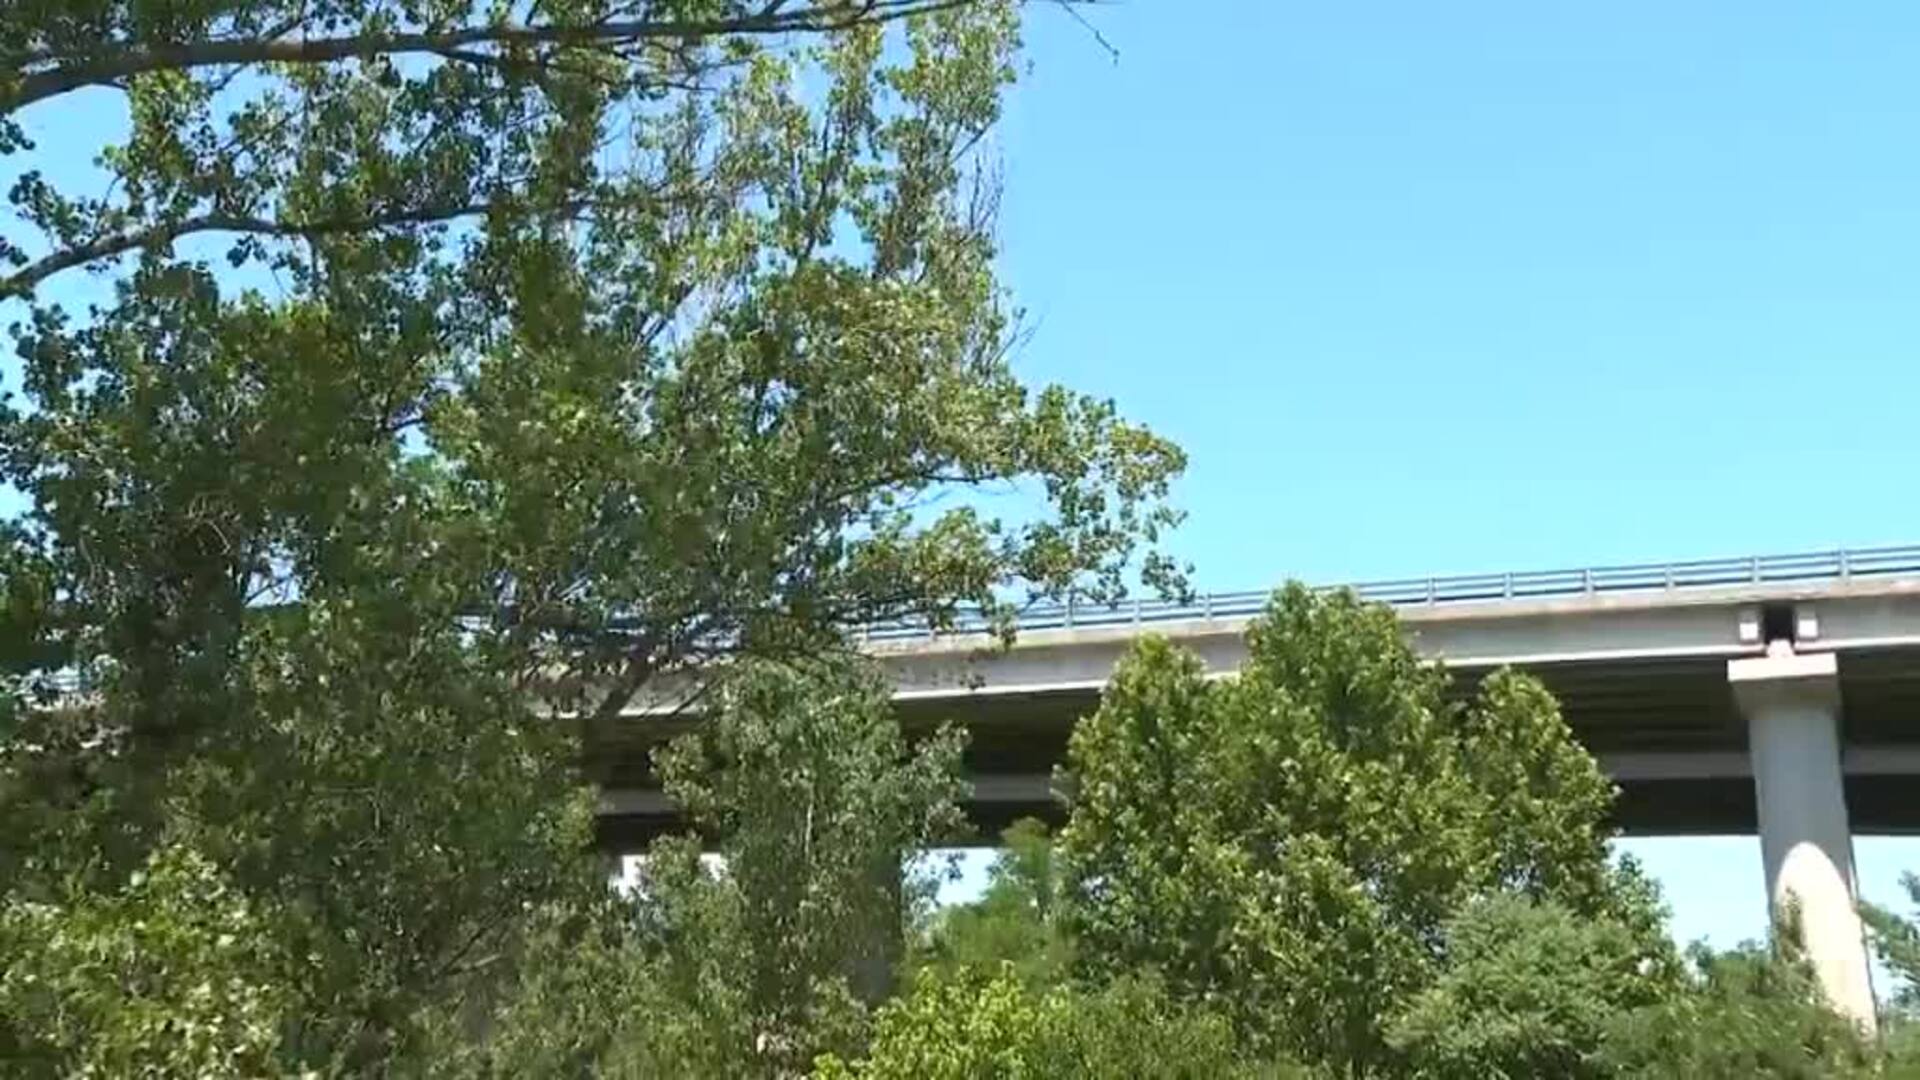 La policía investiga la muerte de dos presuntos ladrones tras saltar desde un viaducto en la AP7 en Gerona